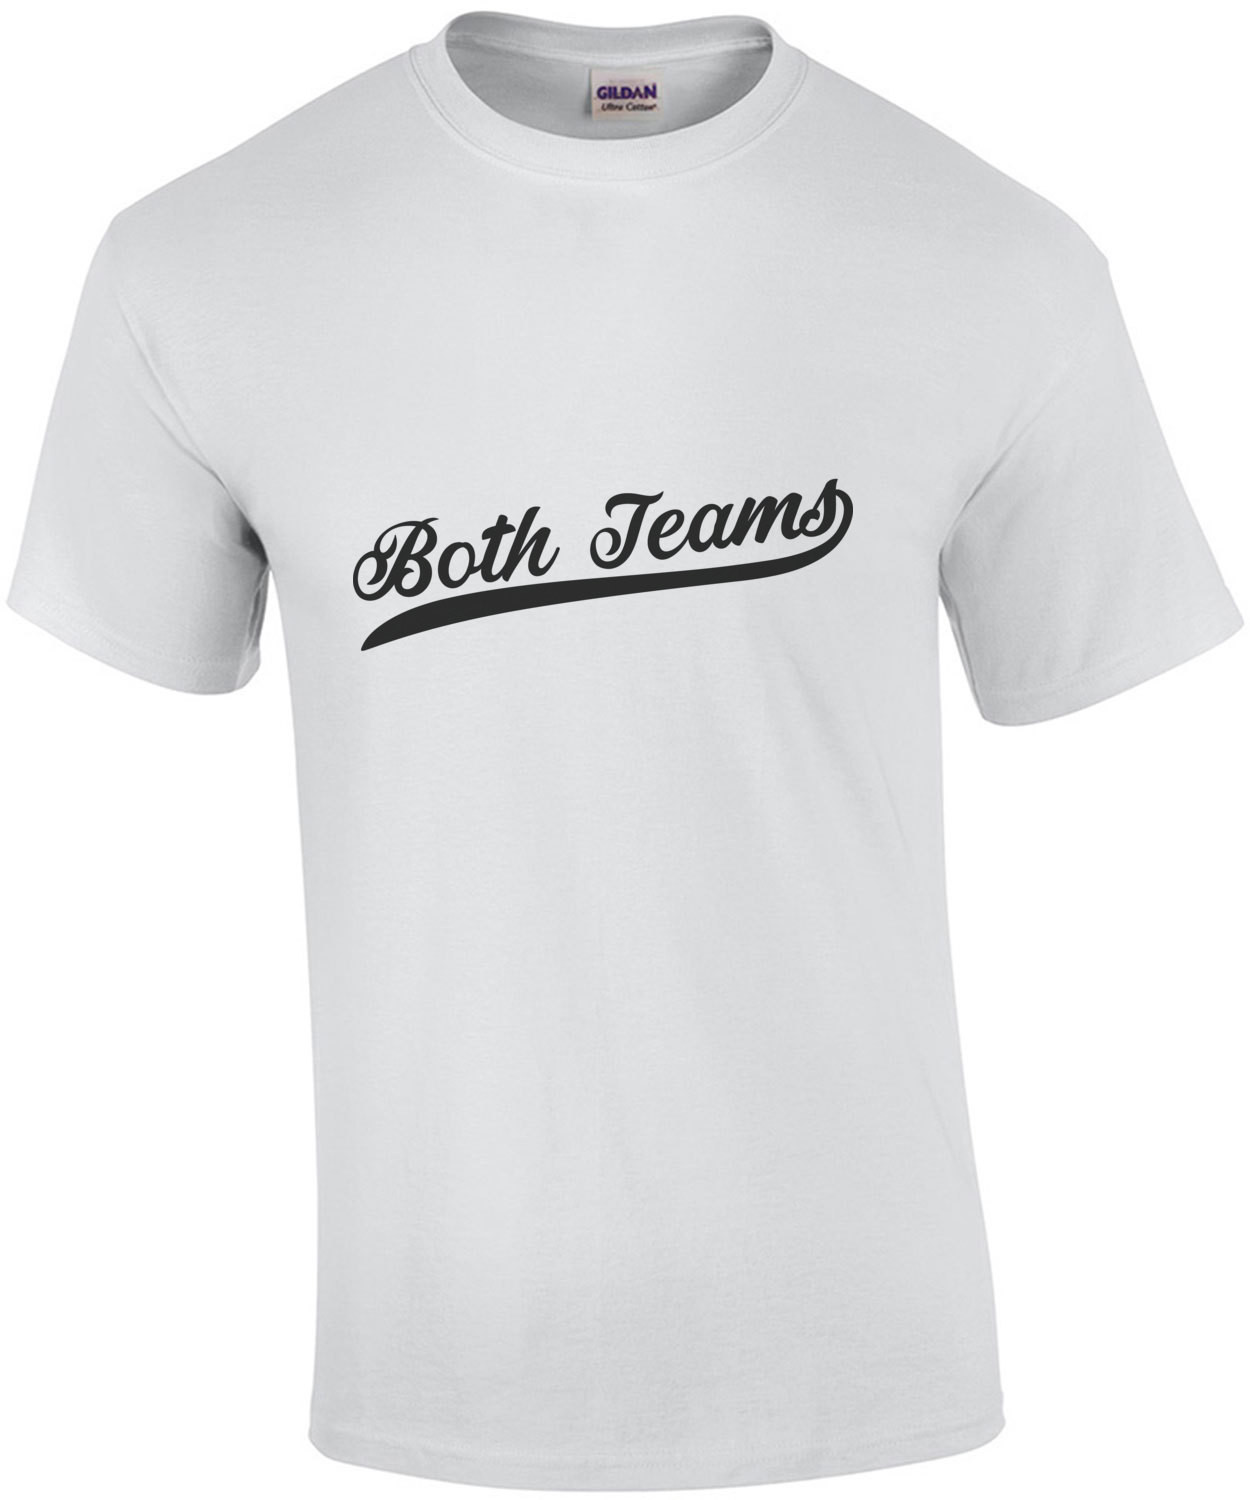 Both Teams - Sports T-Shirt